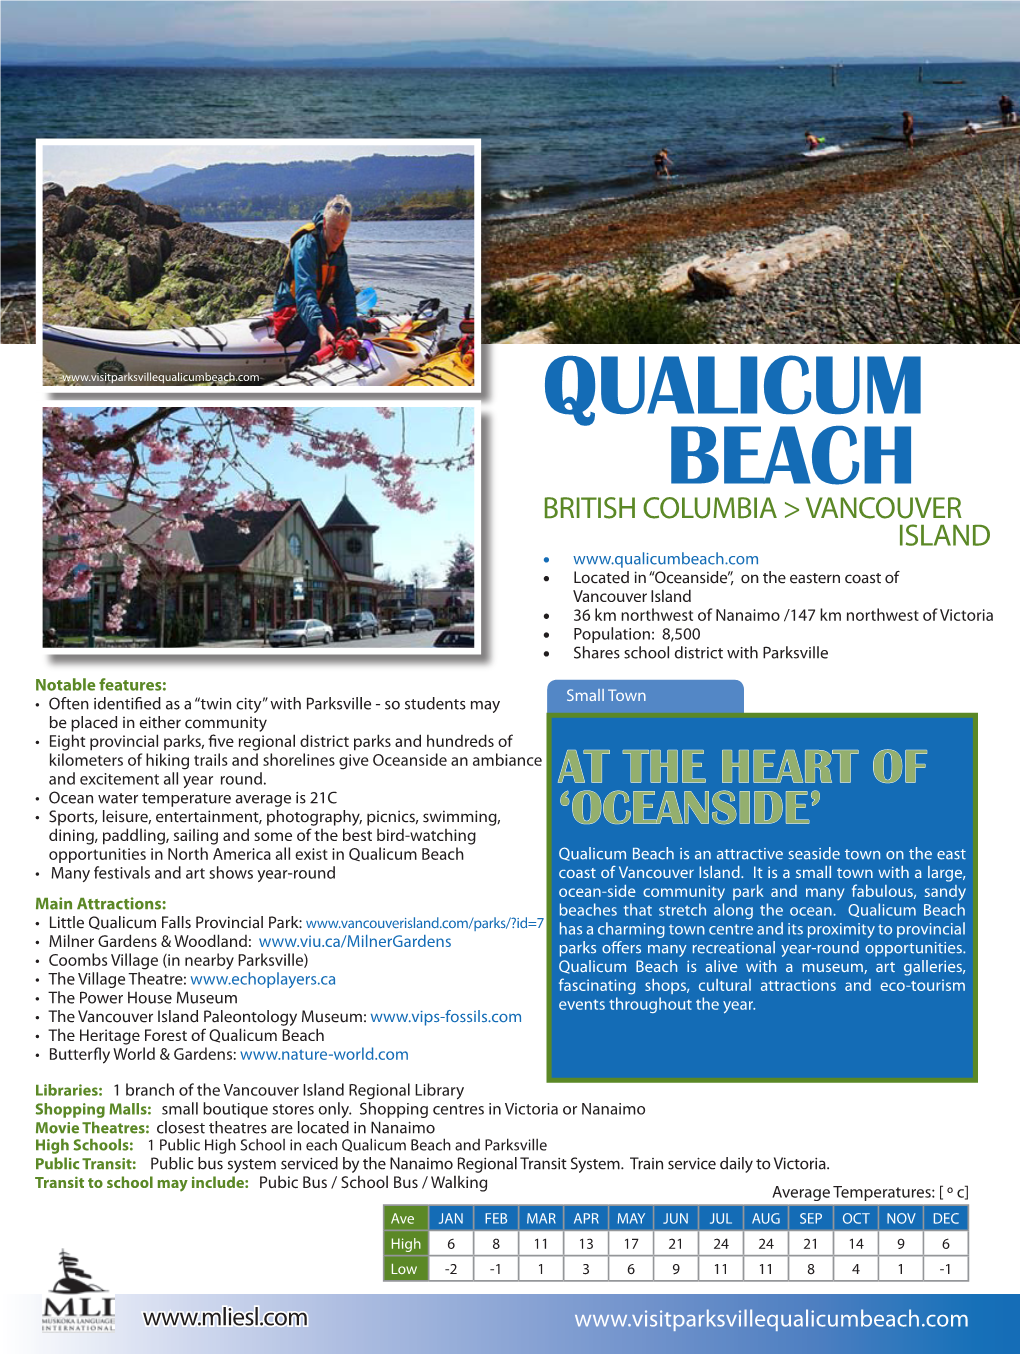 Visit and Study in Qualicum Beach, British Columbia